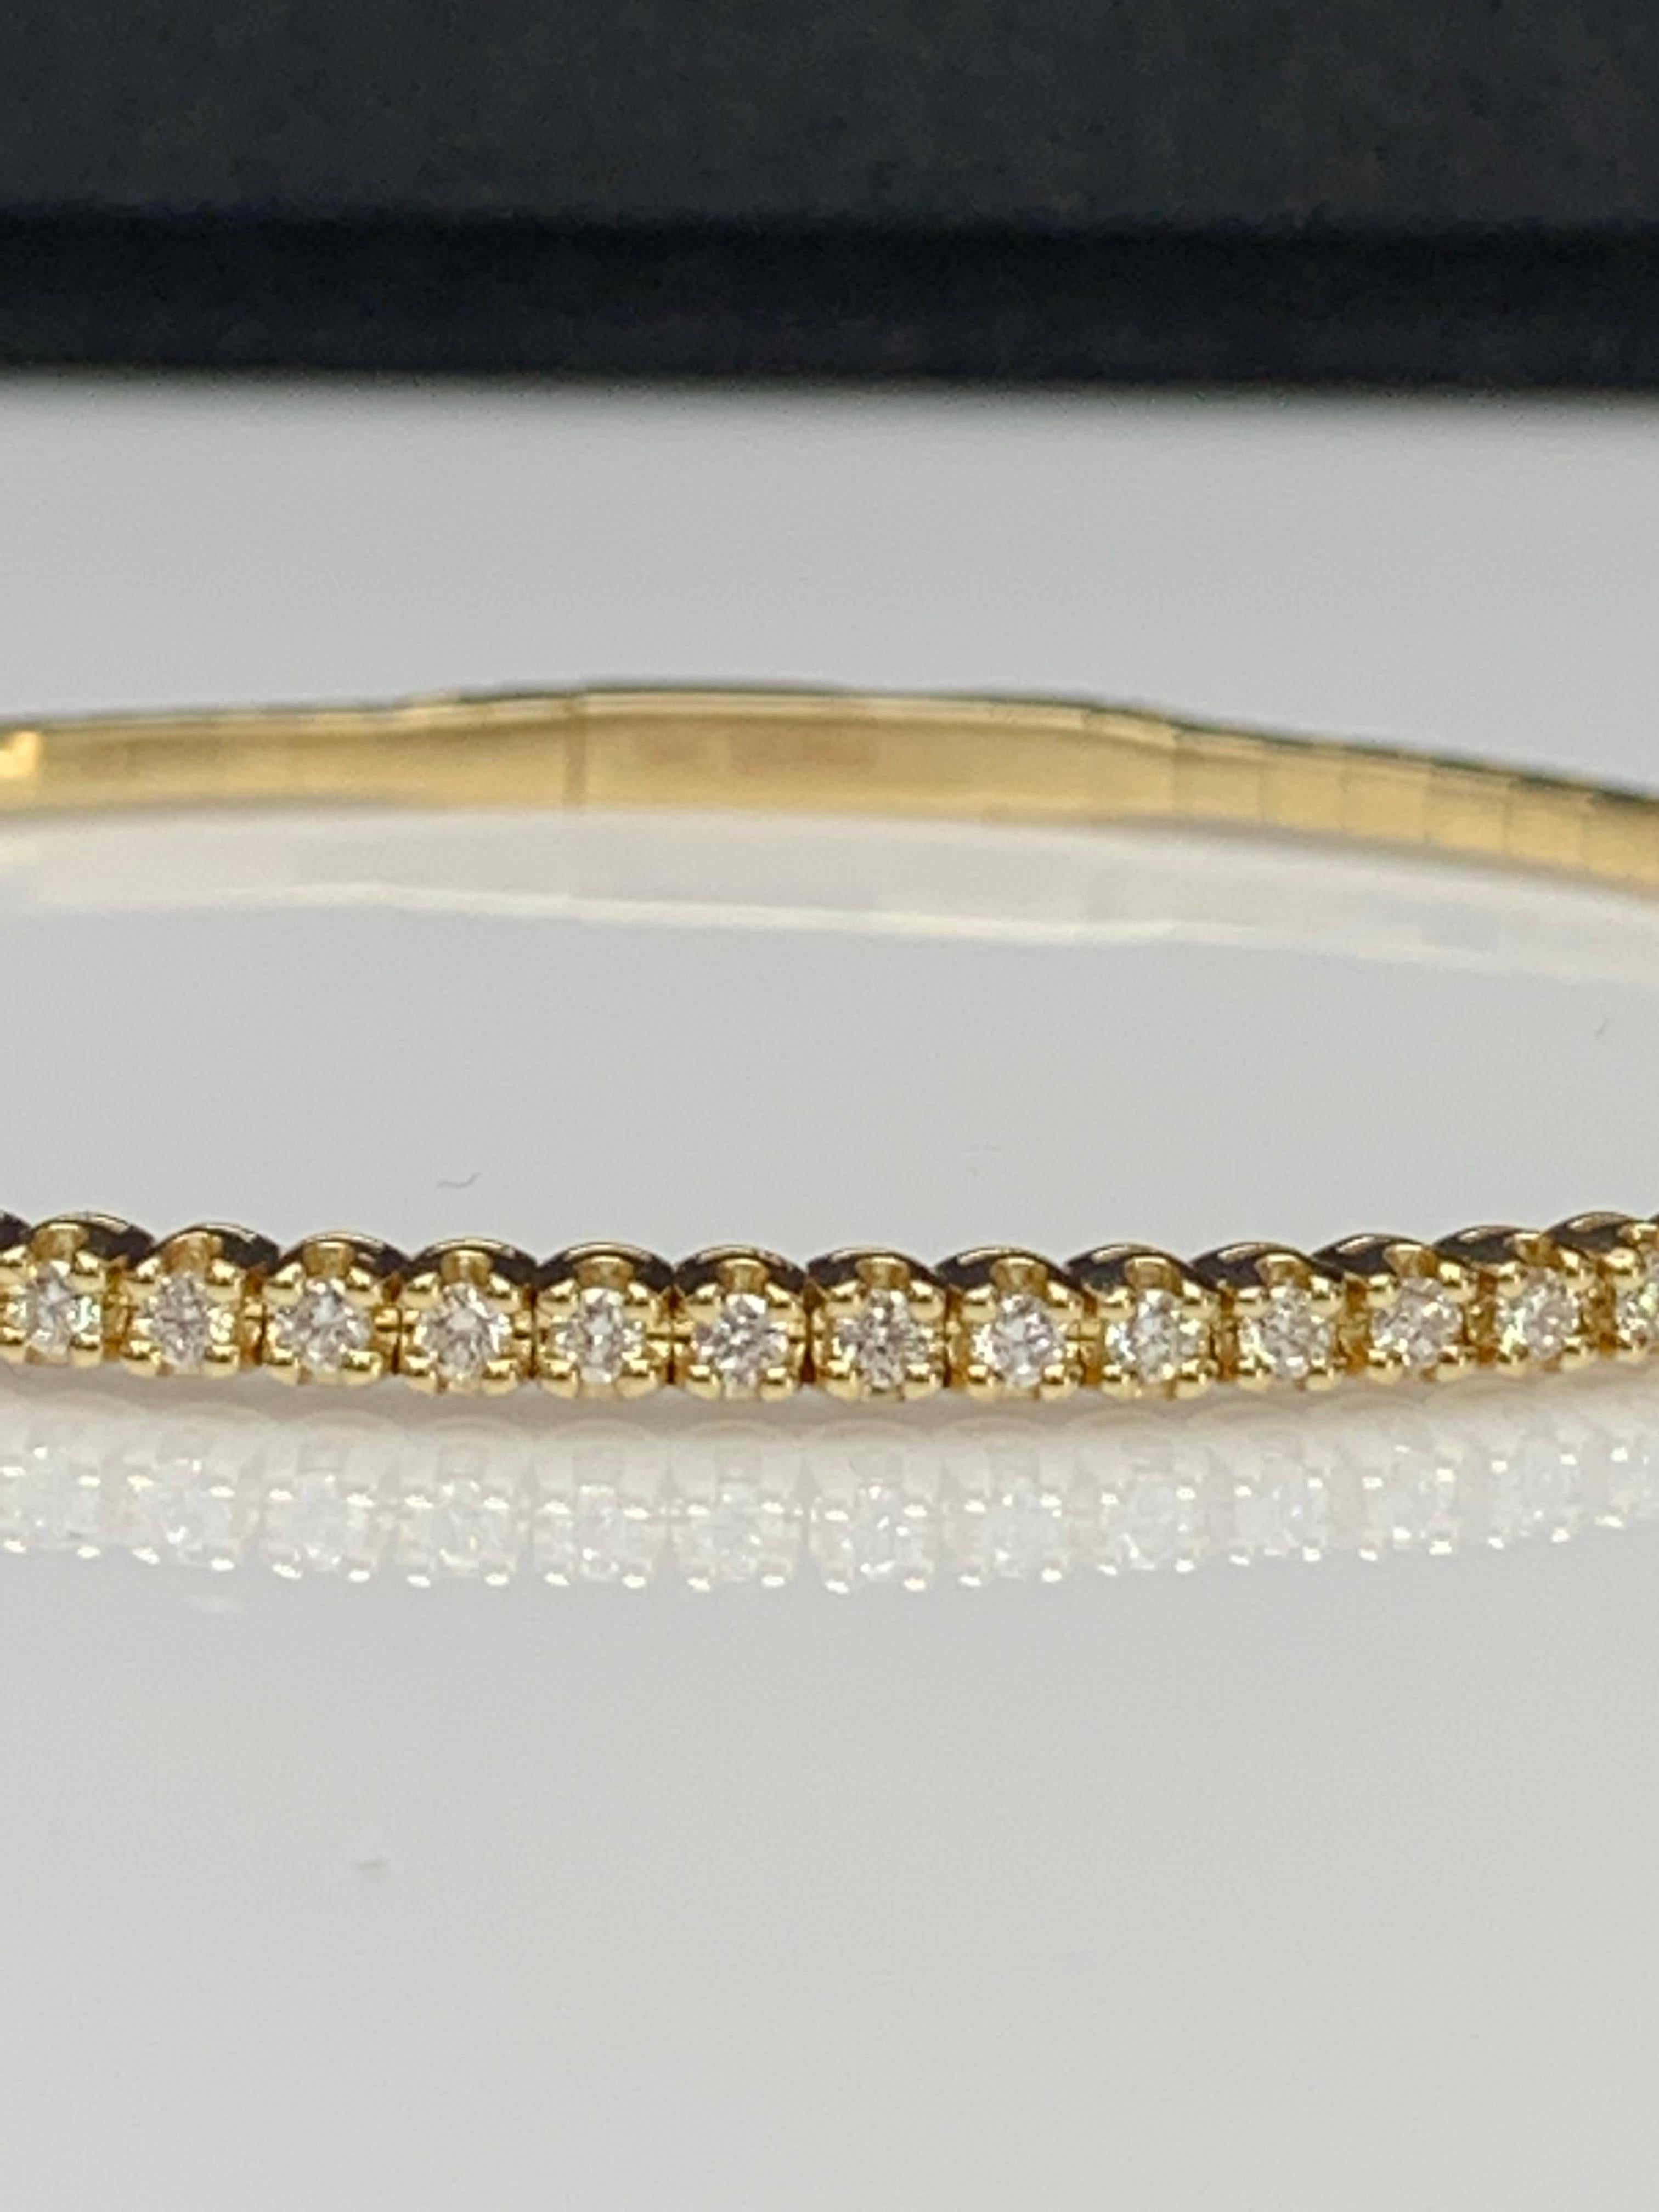 Un bracelet bangle simple mais élégant serti de 33 diamants brillants de taille ronde pesant 0.66 carats au total. Il dispose d'un fermoir pour glisser et porter le bracelet en toute sécurité. Fabriqué en or jaune 14k.

Style disponible dans